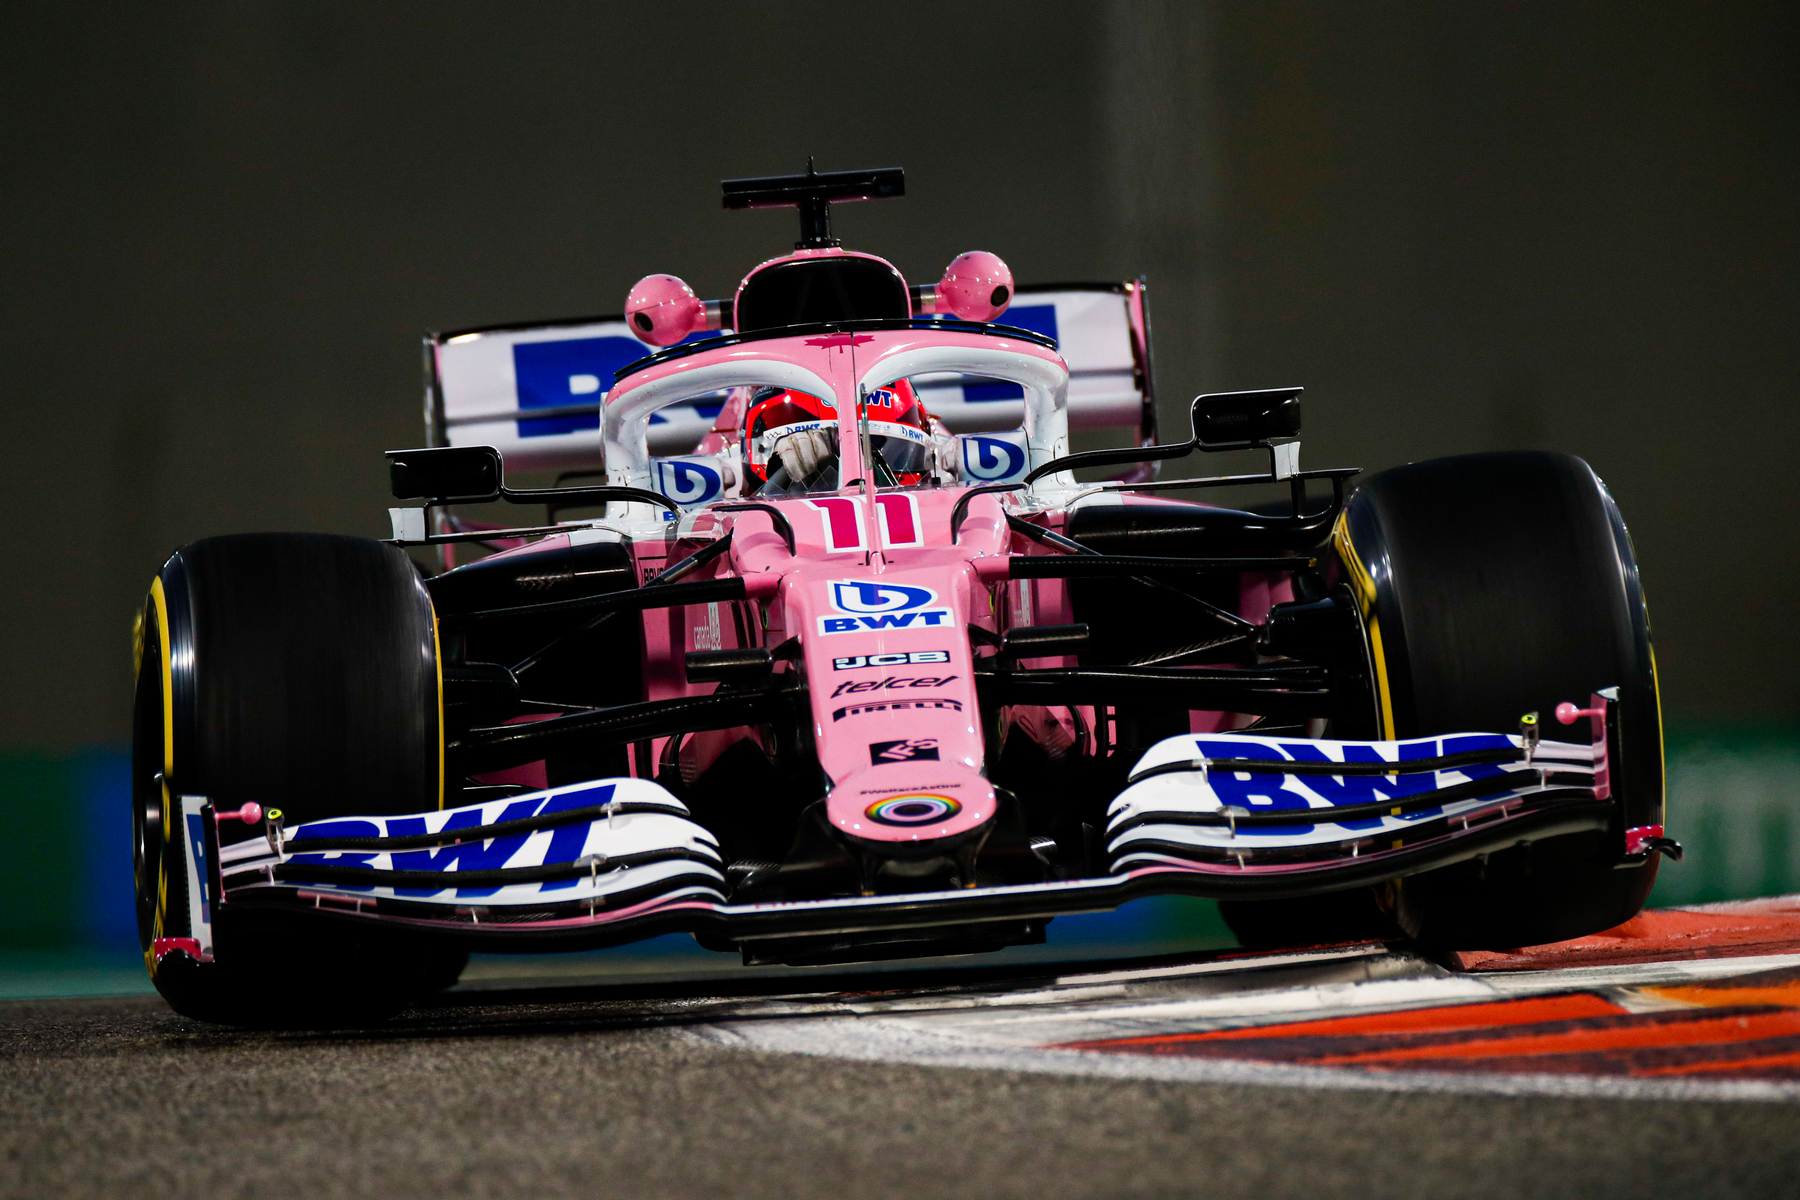 Analiza sezone: BWT Racing Point F1 Team – kontroverzan bolid i prva pobjeda Pereza